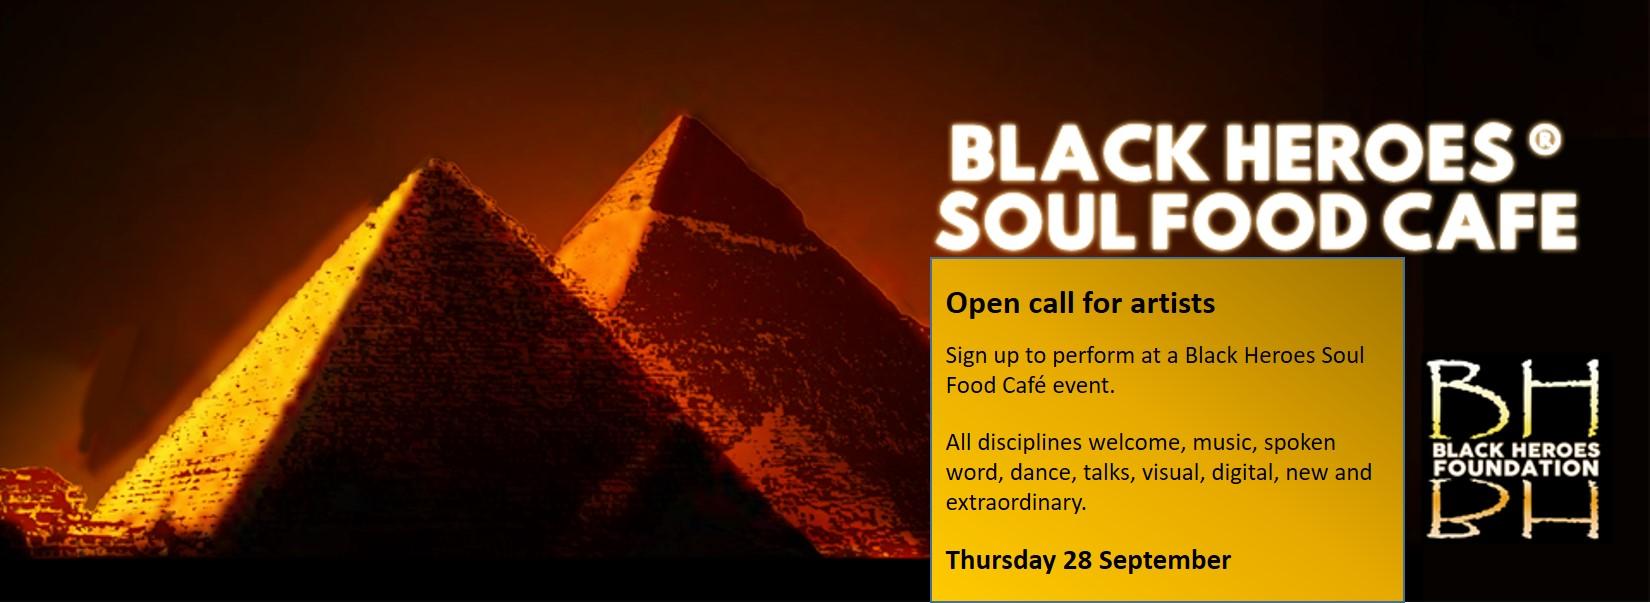 Black Heroes Soul Food Cafe - Call for Artists 28 Sept | Blacknet UK